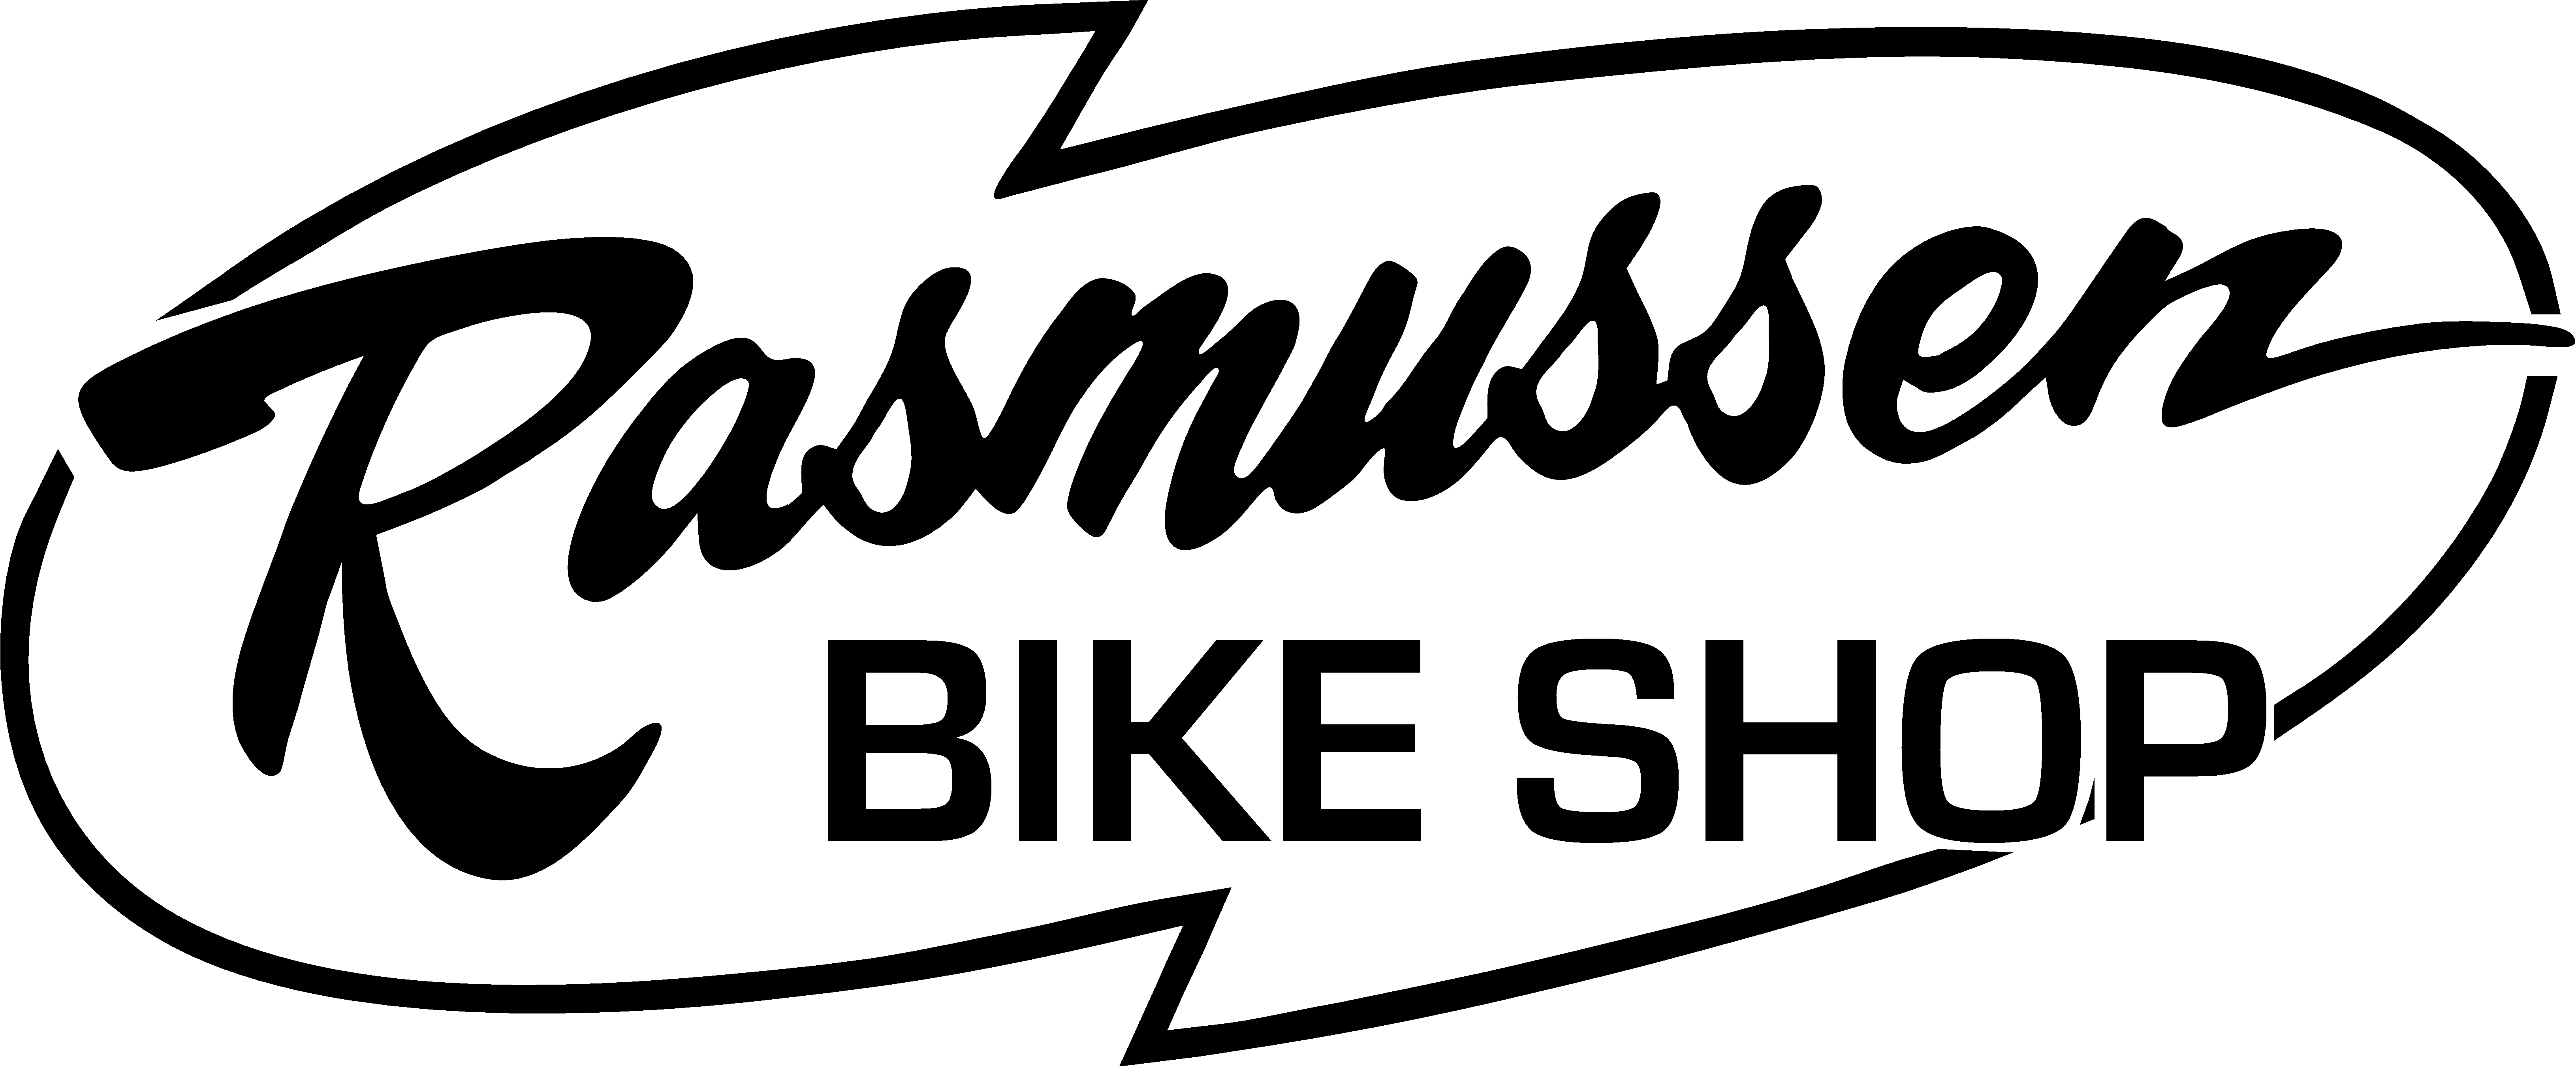 Rasmussen Bike Shop